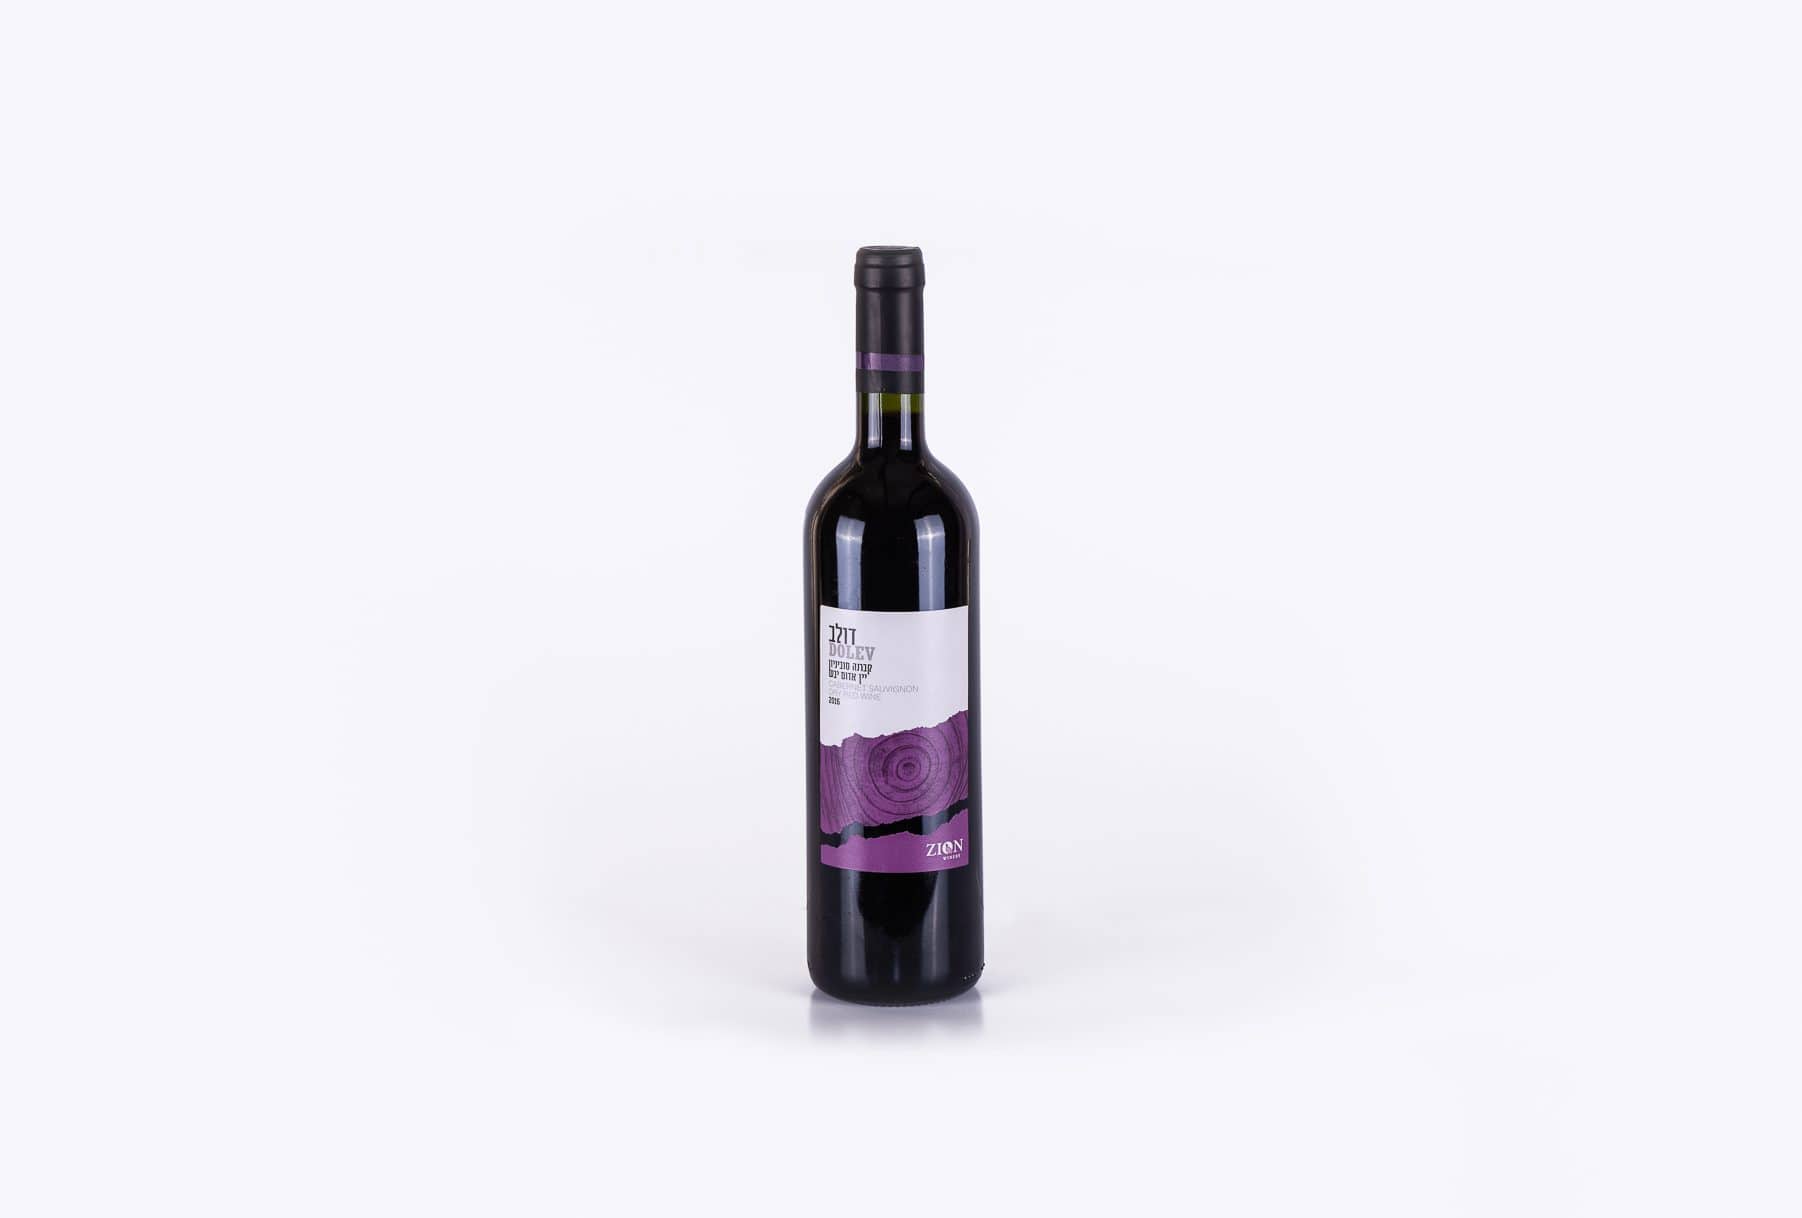 הדפסת תוויות עבור בקבוקי היין האדום של יקב דולב. התוויות עוצבה בשני צבעים: לבן וסגול וציור מאוד מעניין שנותן ליין מראה יוקרתי.